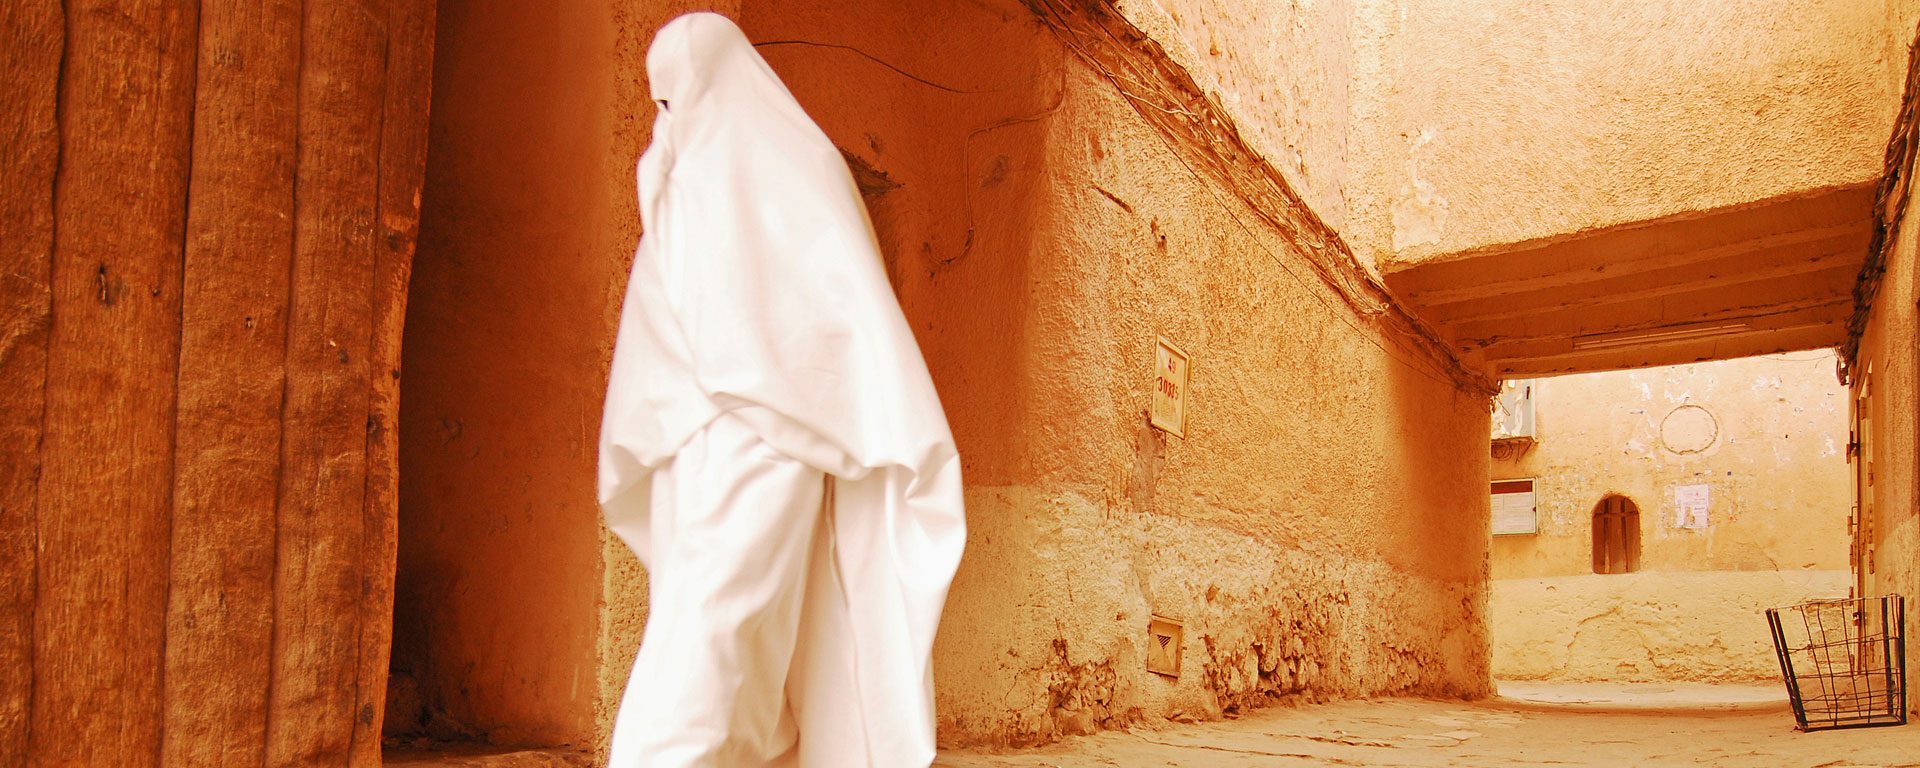 Woman walking through narrow streets of Ghardaia, Algeria